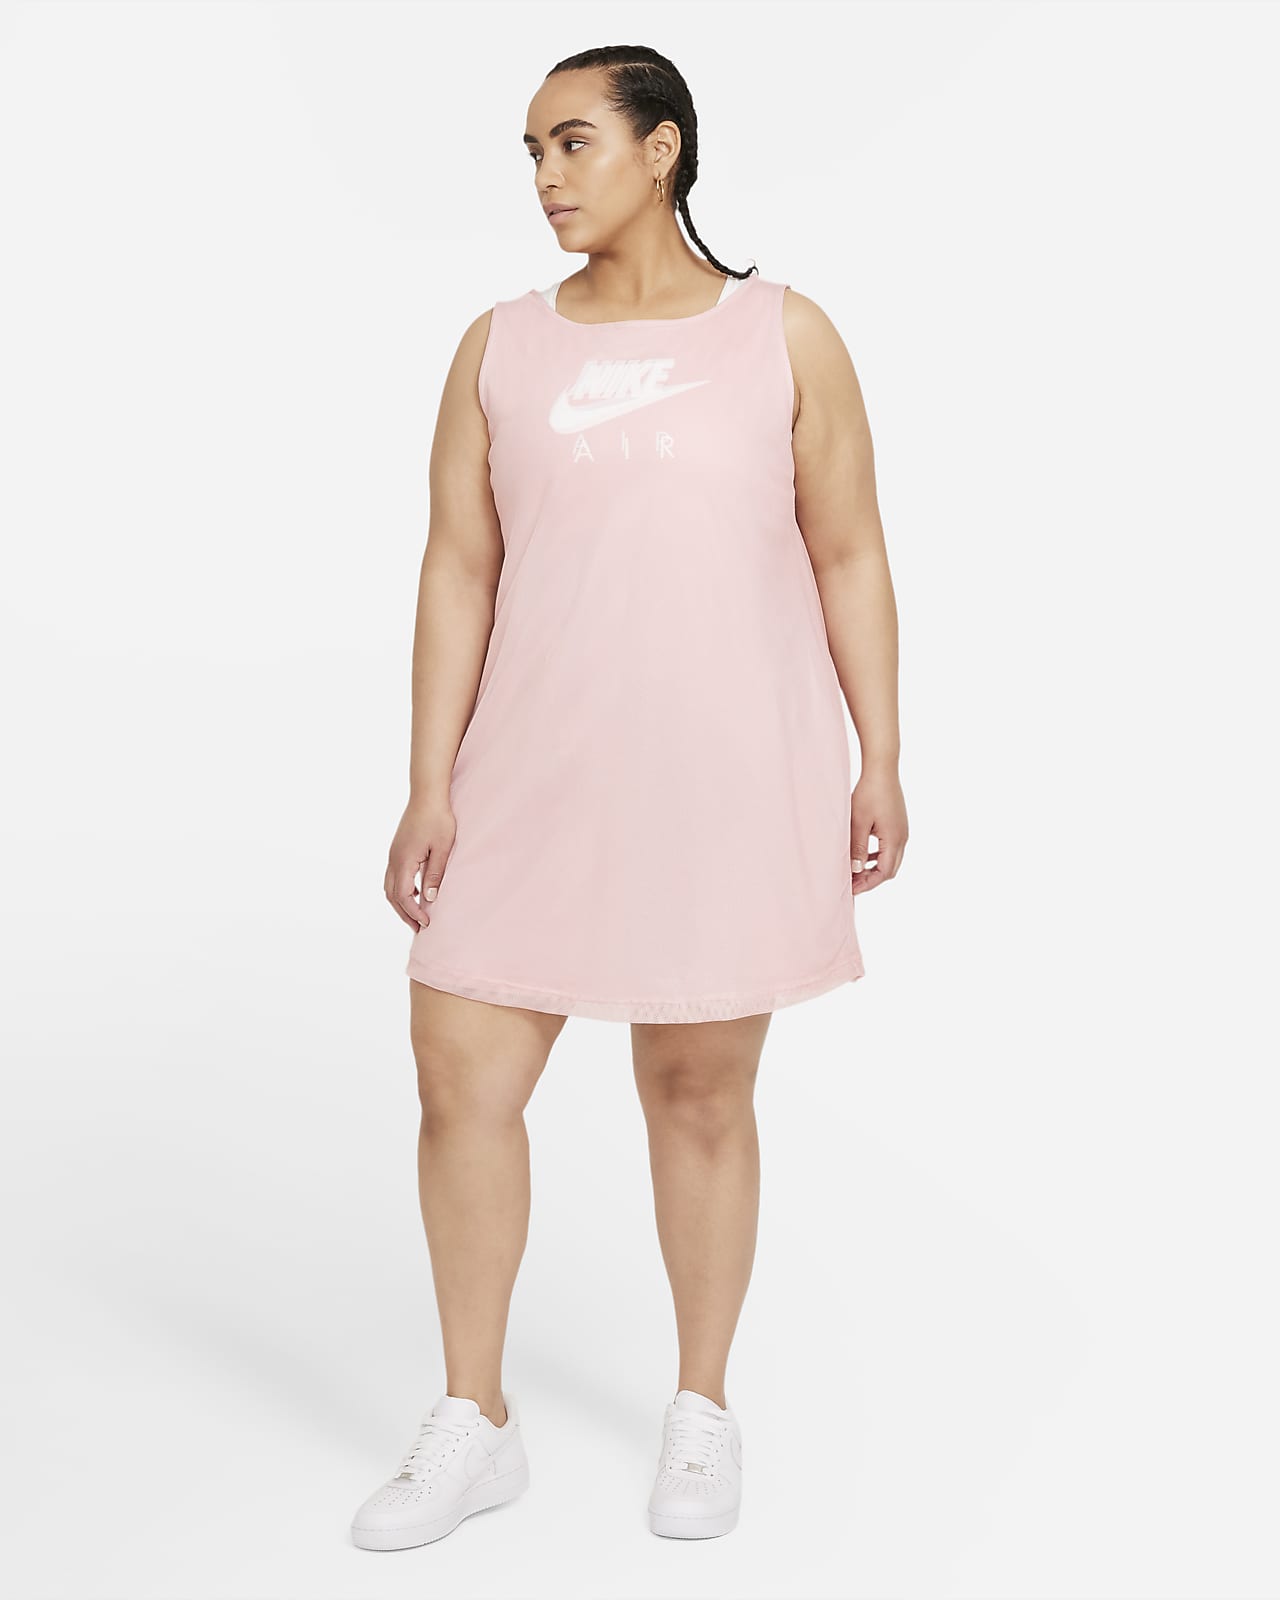 Nike Air Women's Dress (Plus Size 